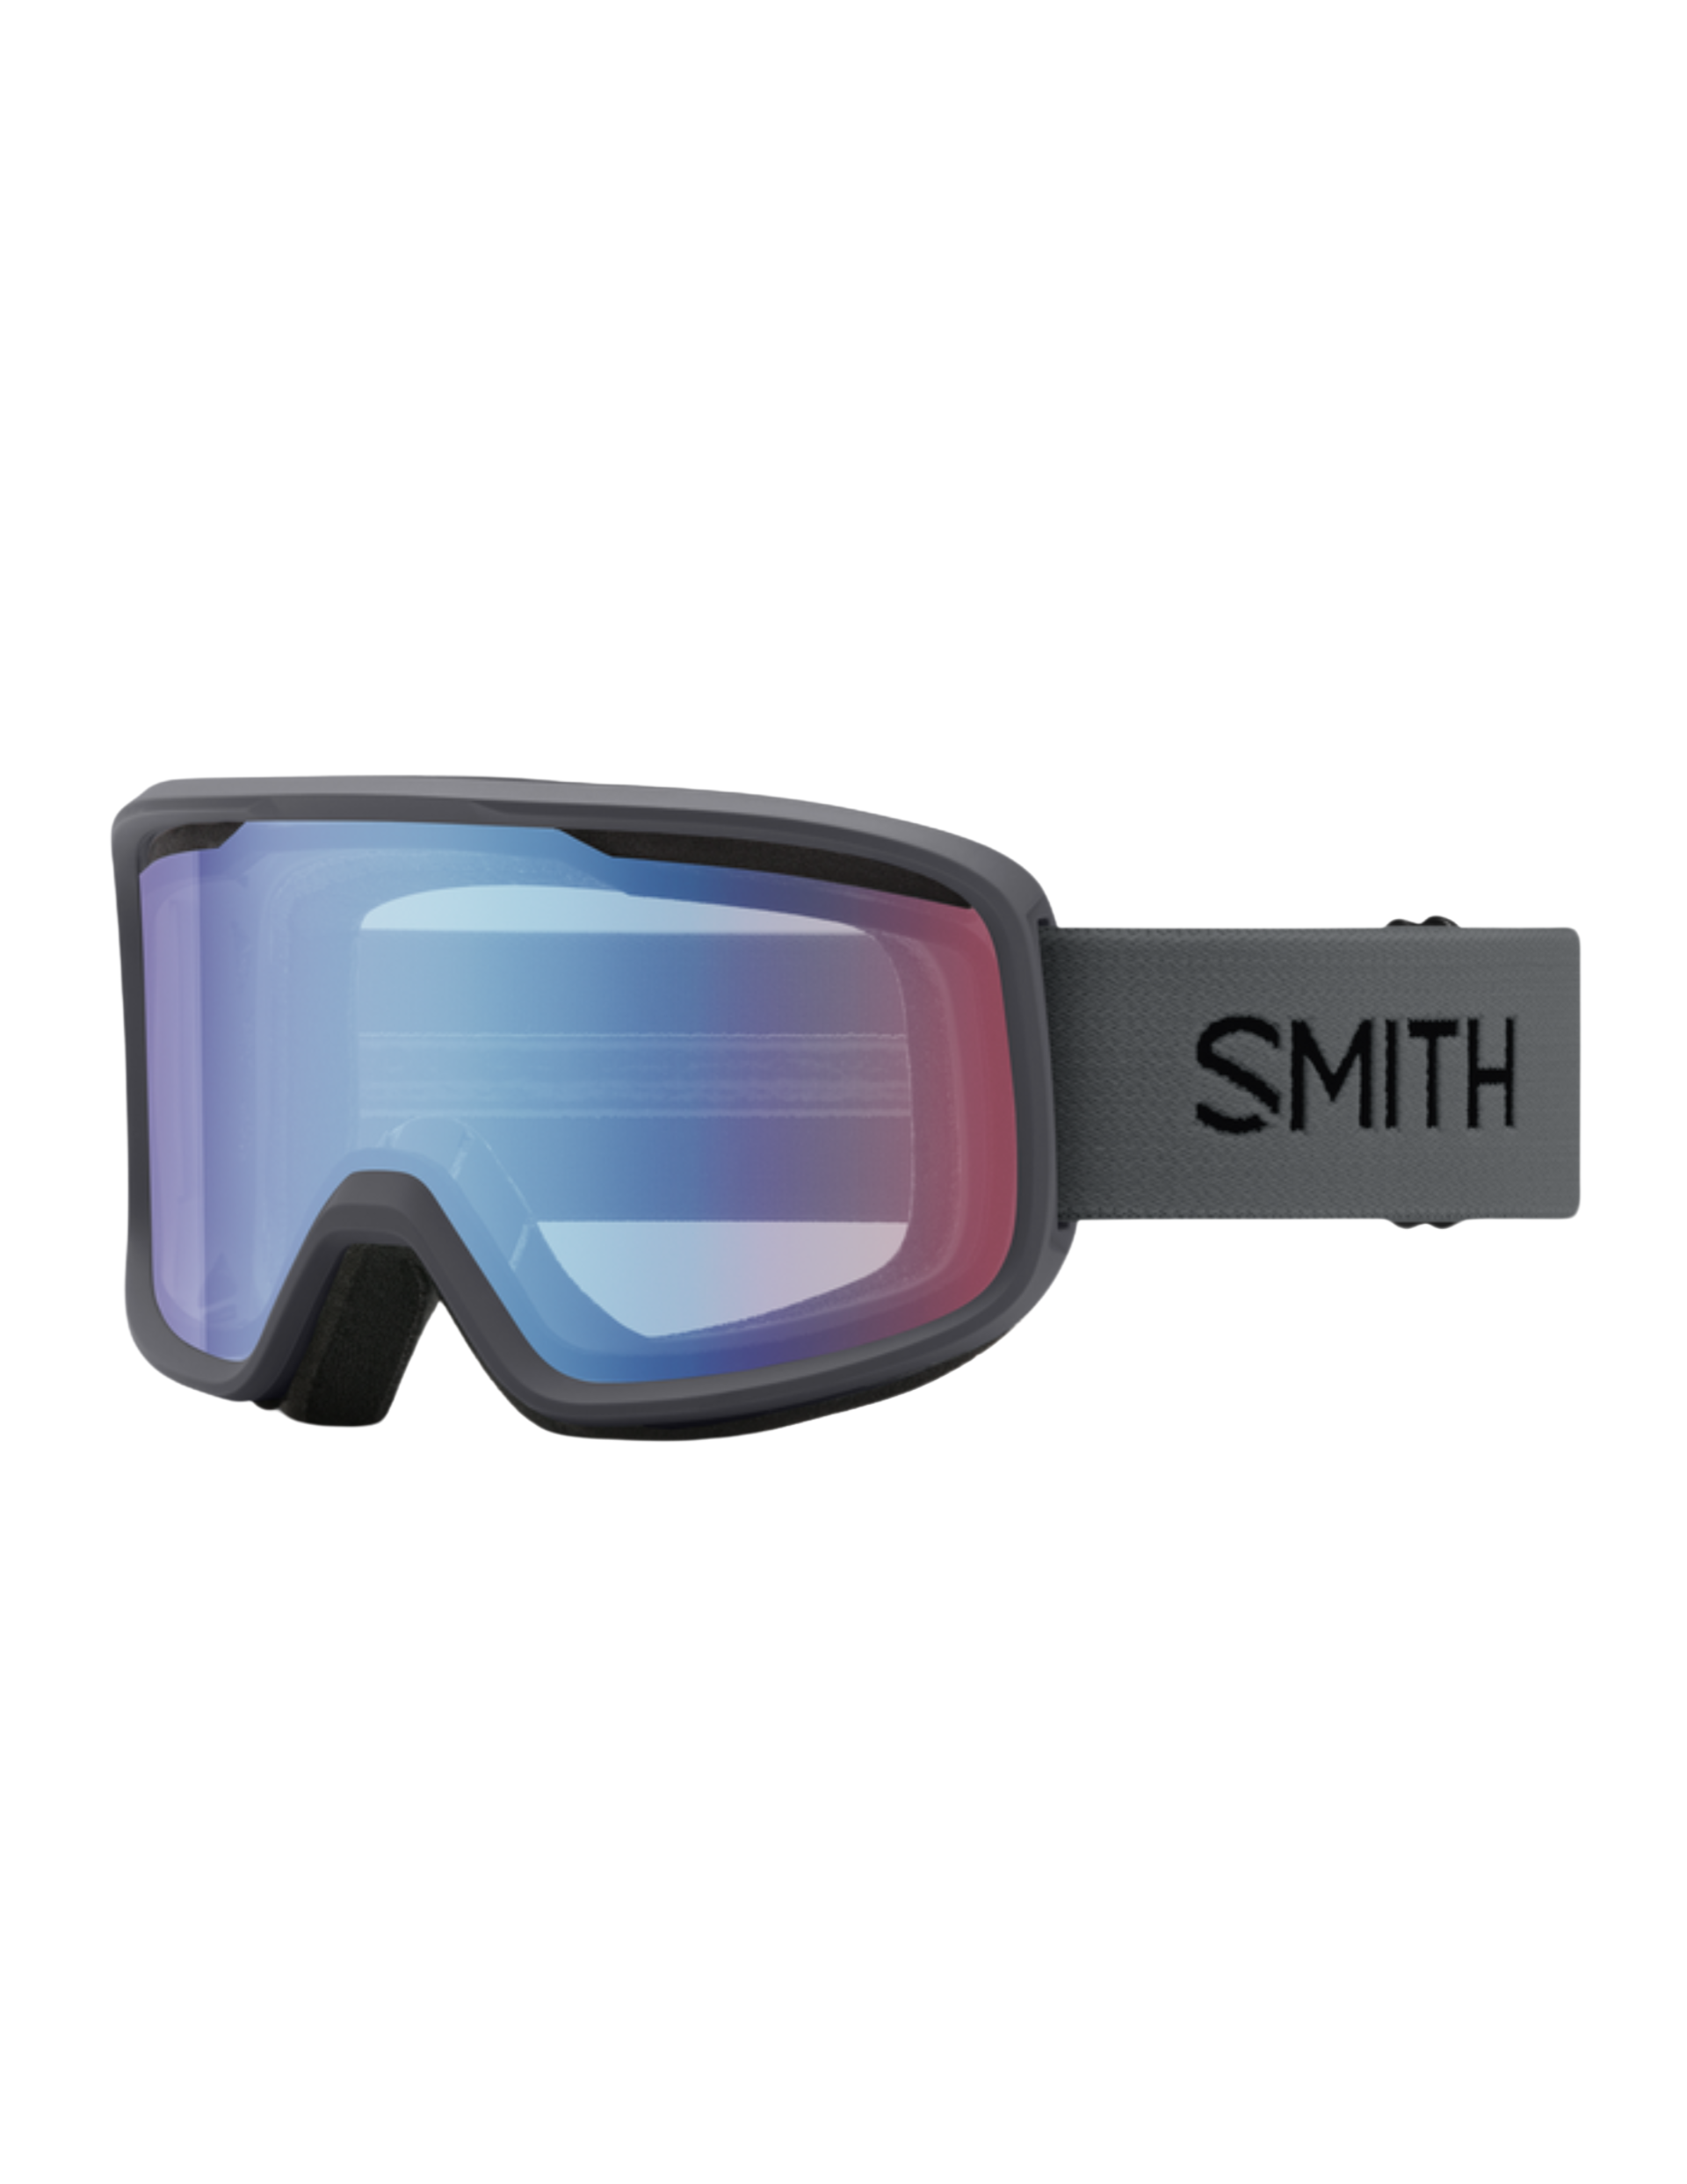 Masque Smith Frontier avec monture Charcoal et écran classe 1 Blue Sensor Mirror